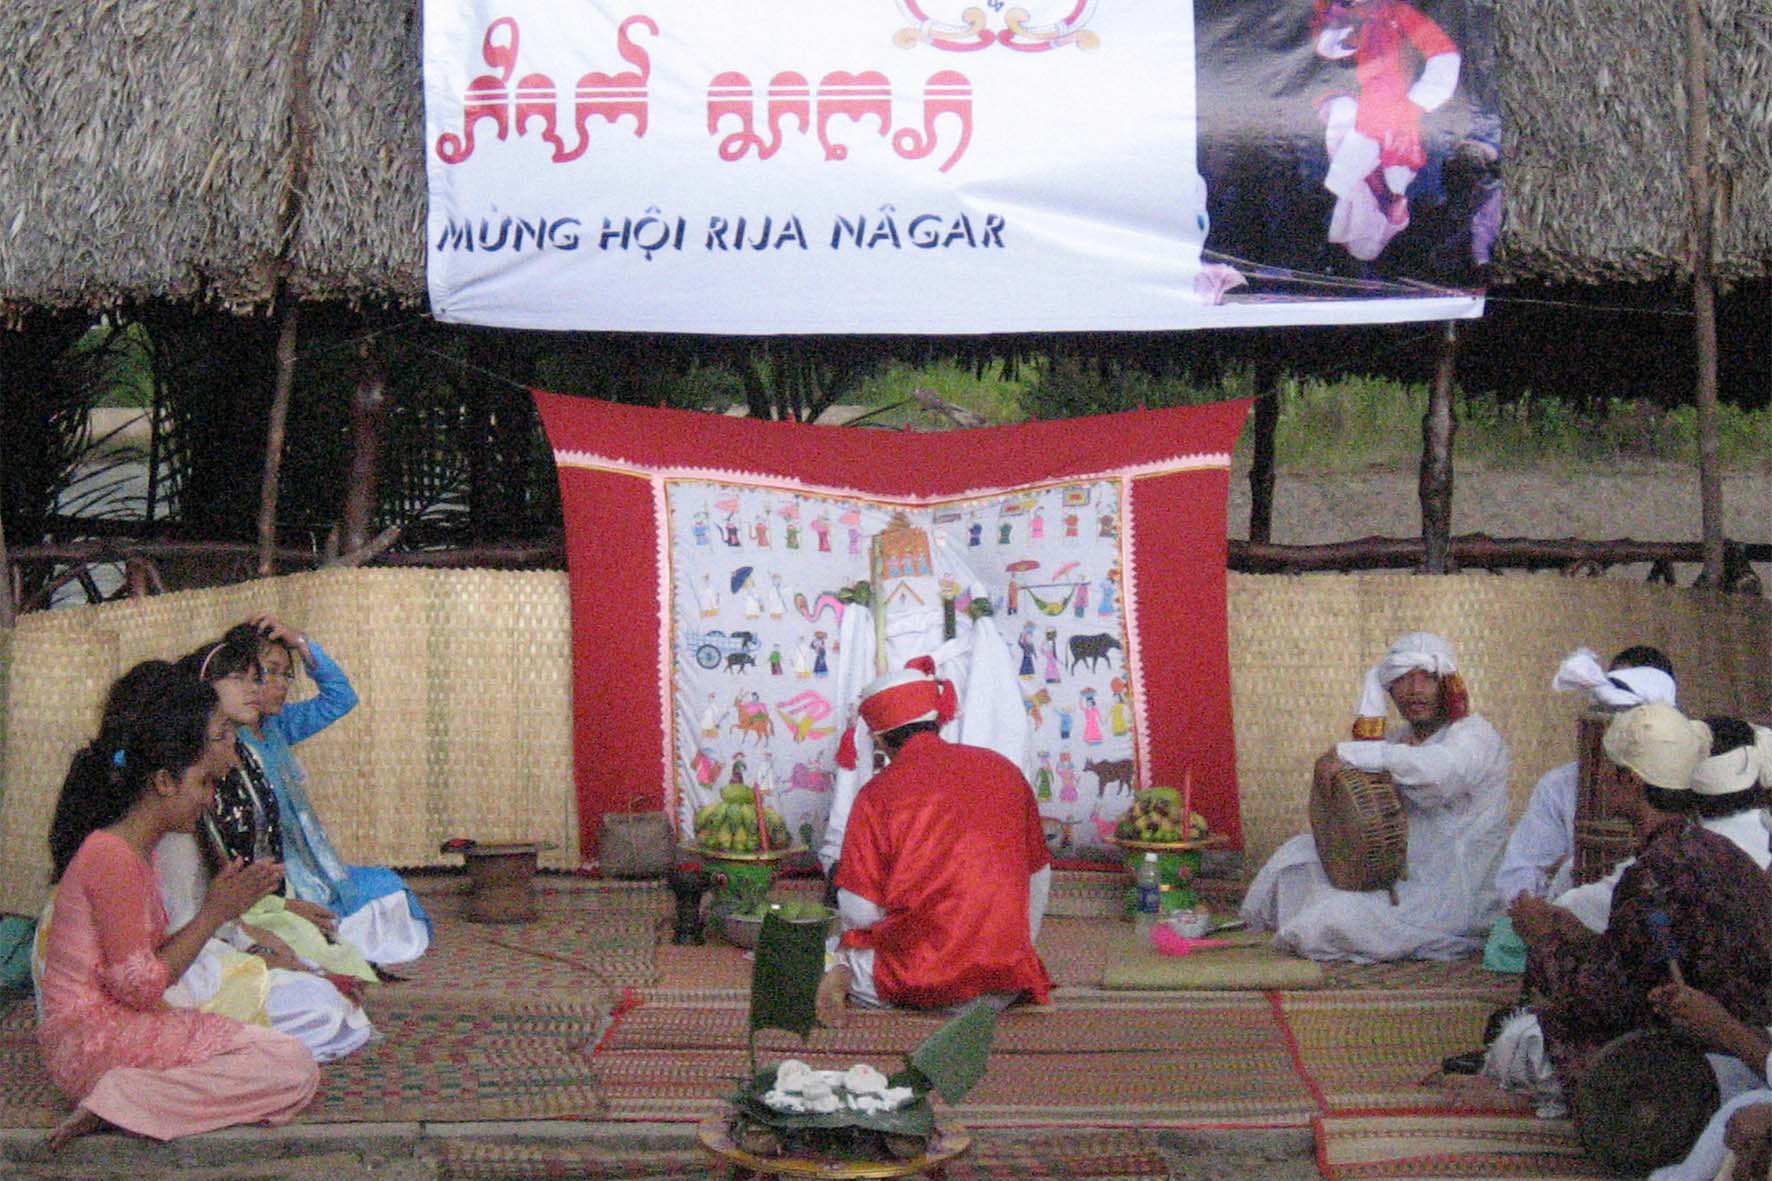  					Lễ hội Rija Nagar của người Chăm				